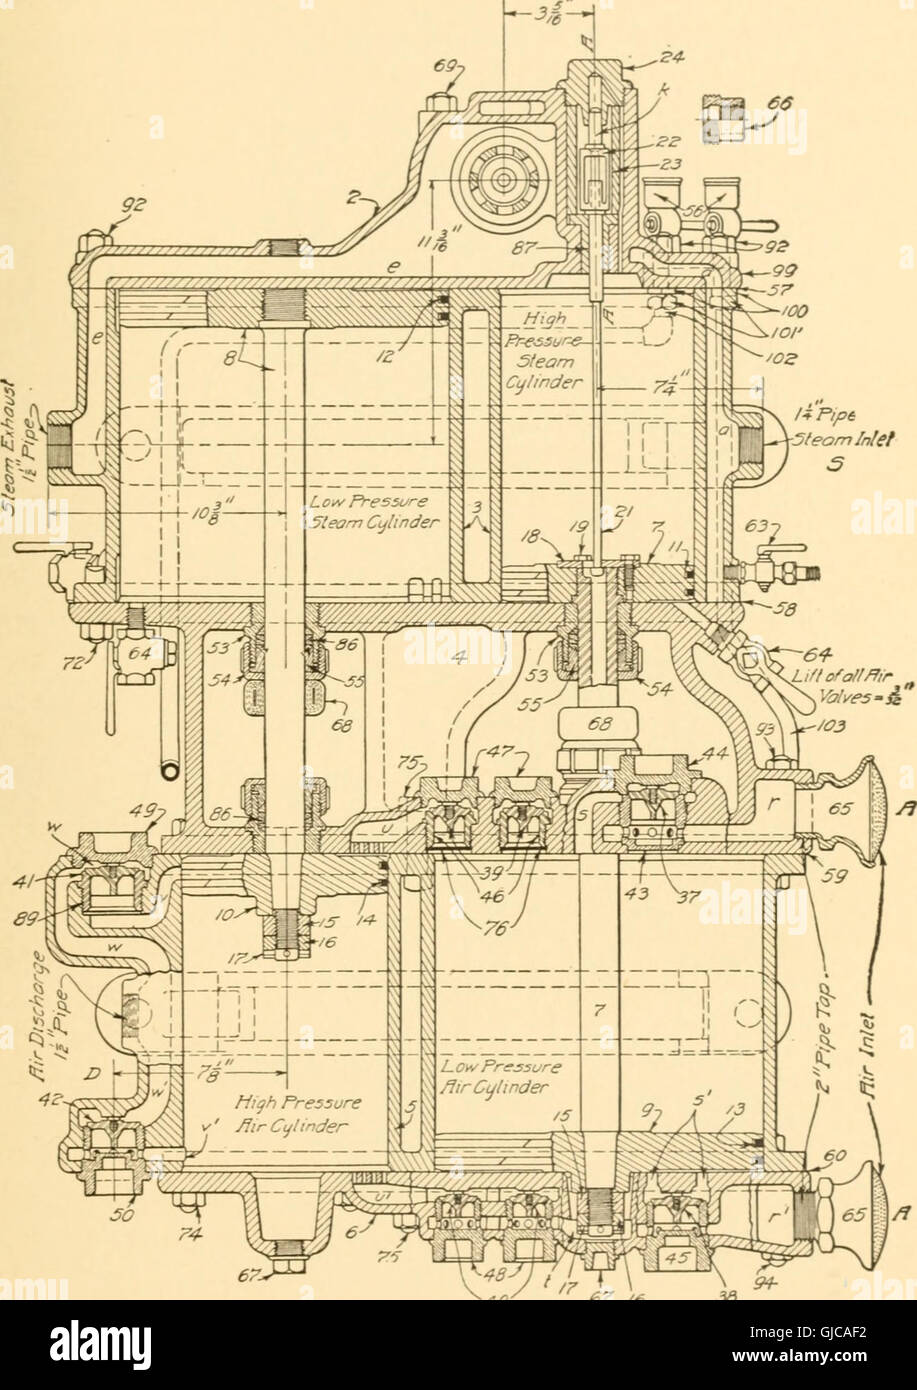 Druckluftbremsen, eine aktuelle Abhandlung über die Westinghouse-Druckluftbremse wie konzipiert für Passagier-und Güterverkehr und für Elektroautos (1918) Stockfoto